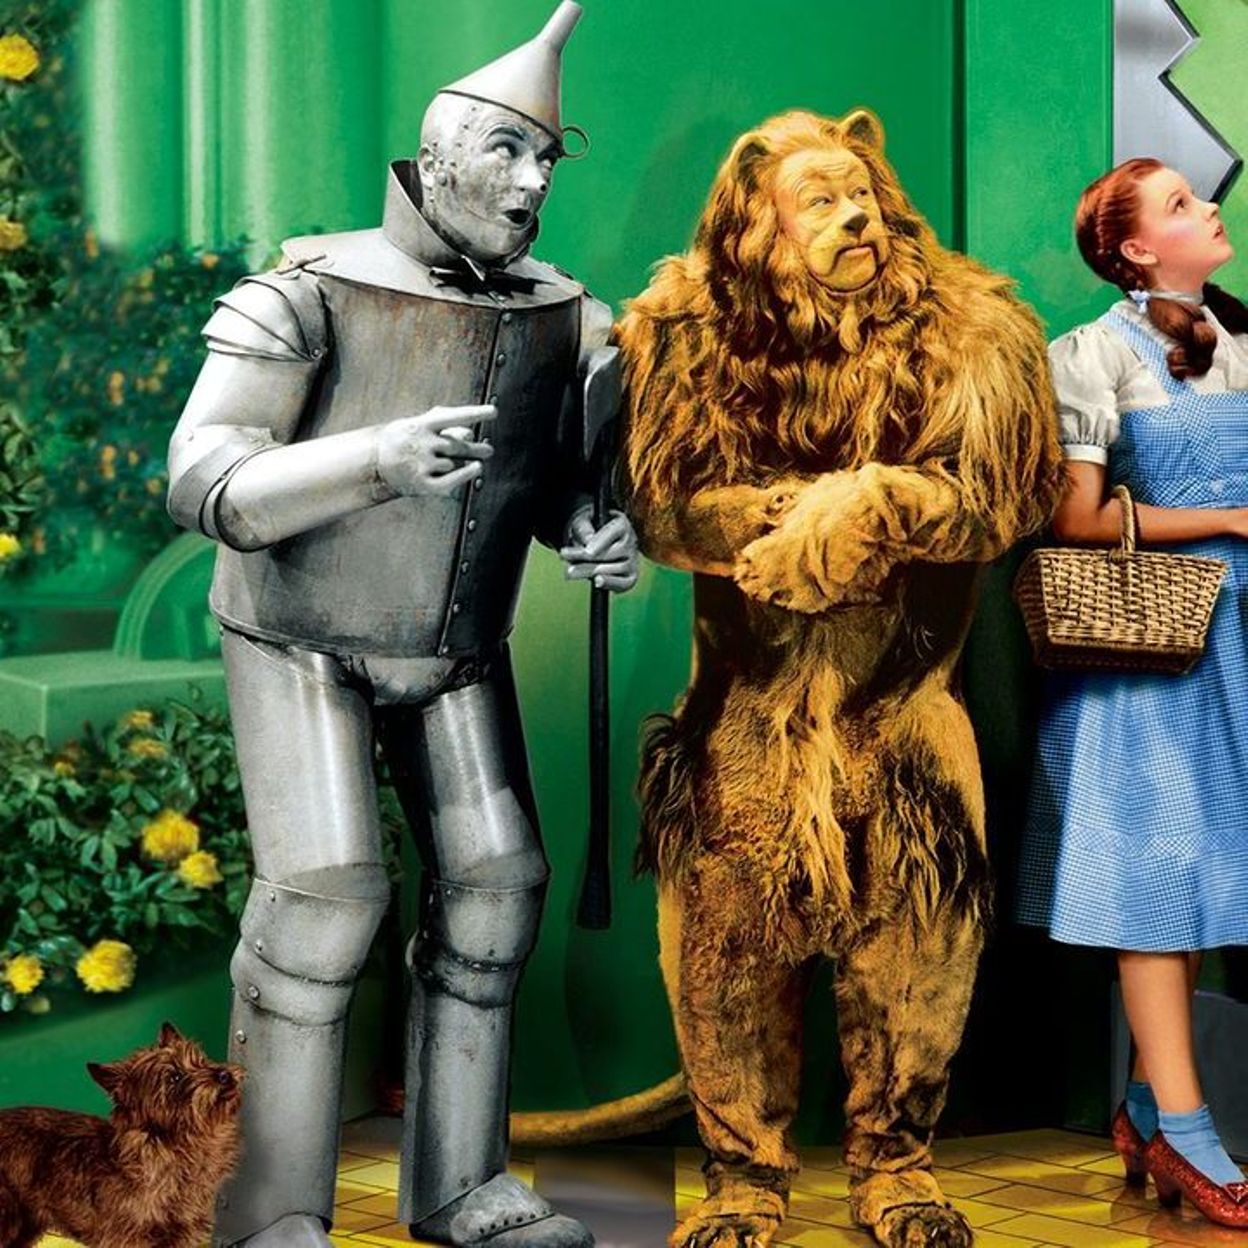 Avant le film, un livre : 'Le Magicien d'Oz' 